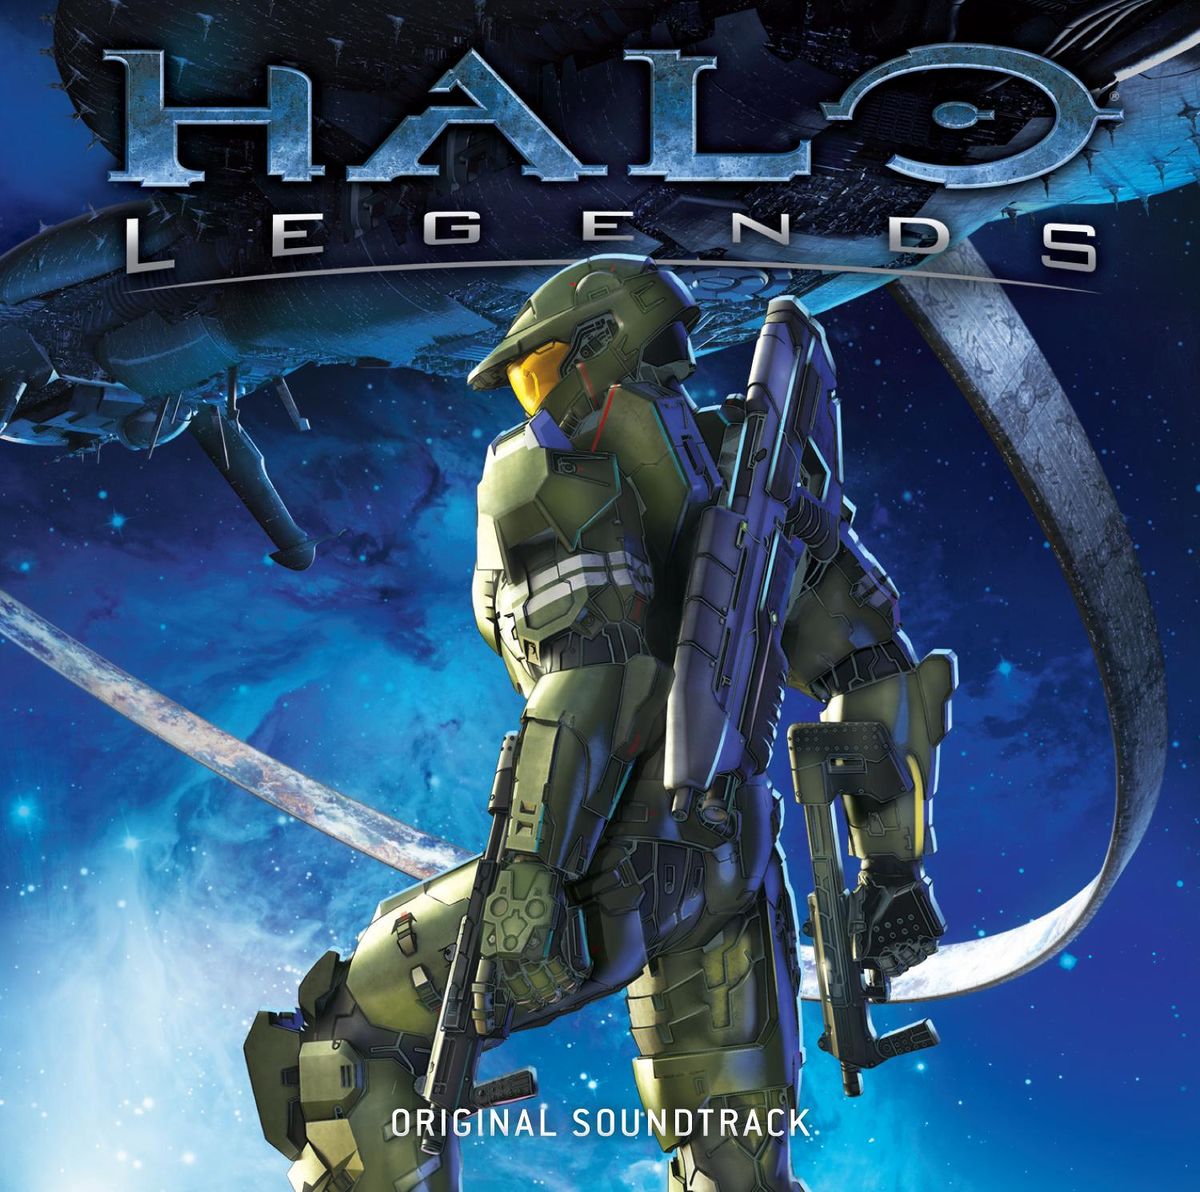 Halo 3 odst soundtrack youtube